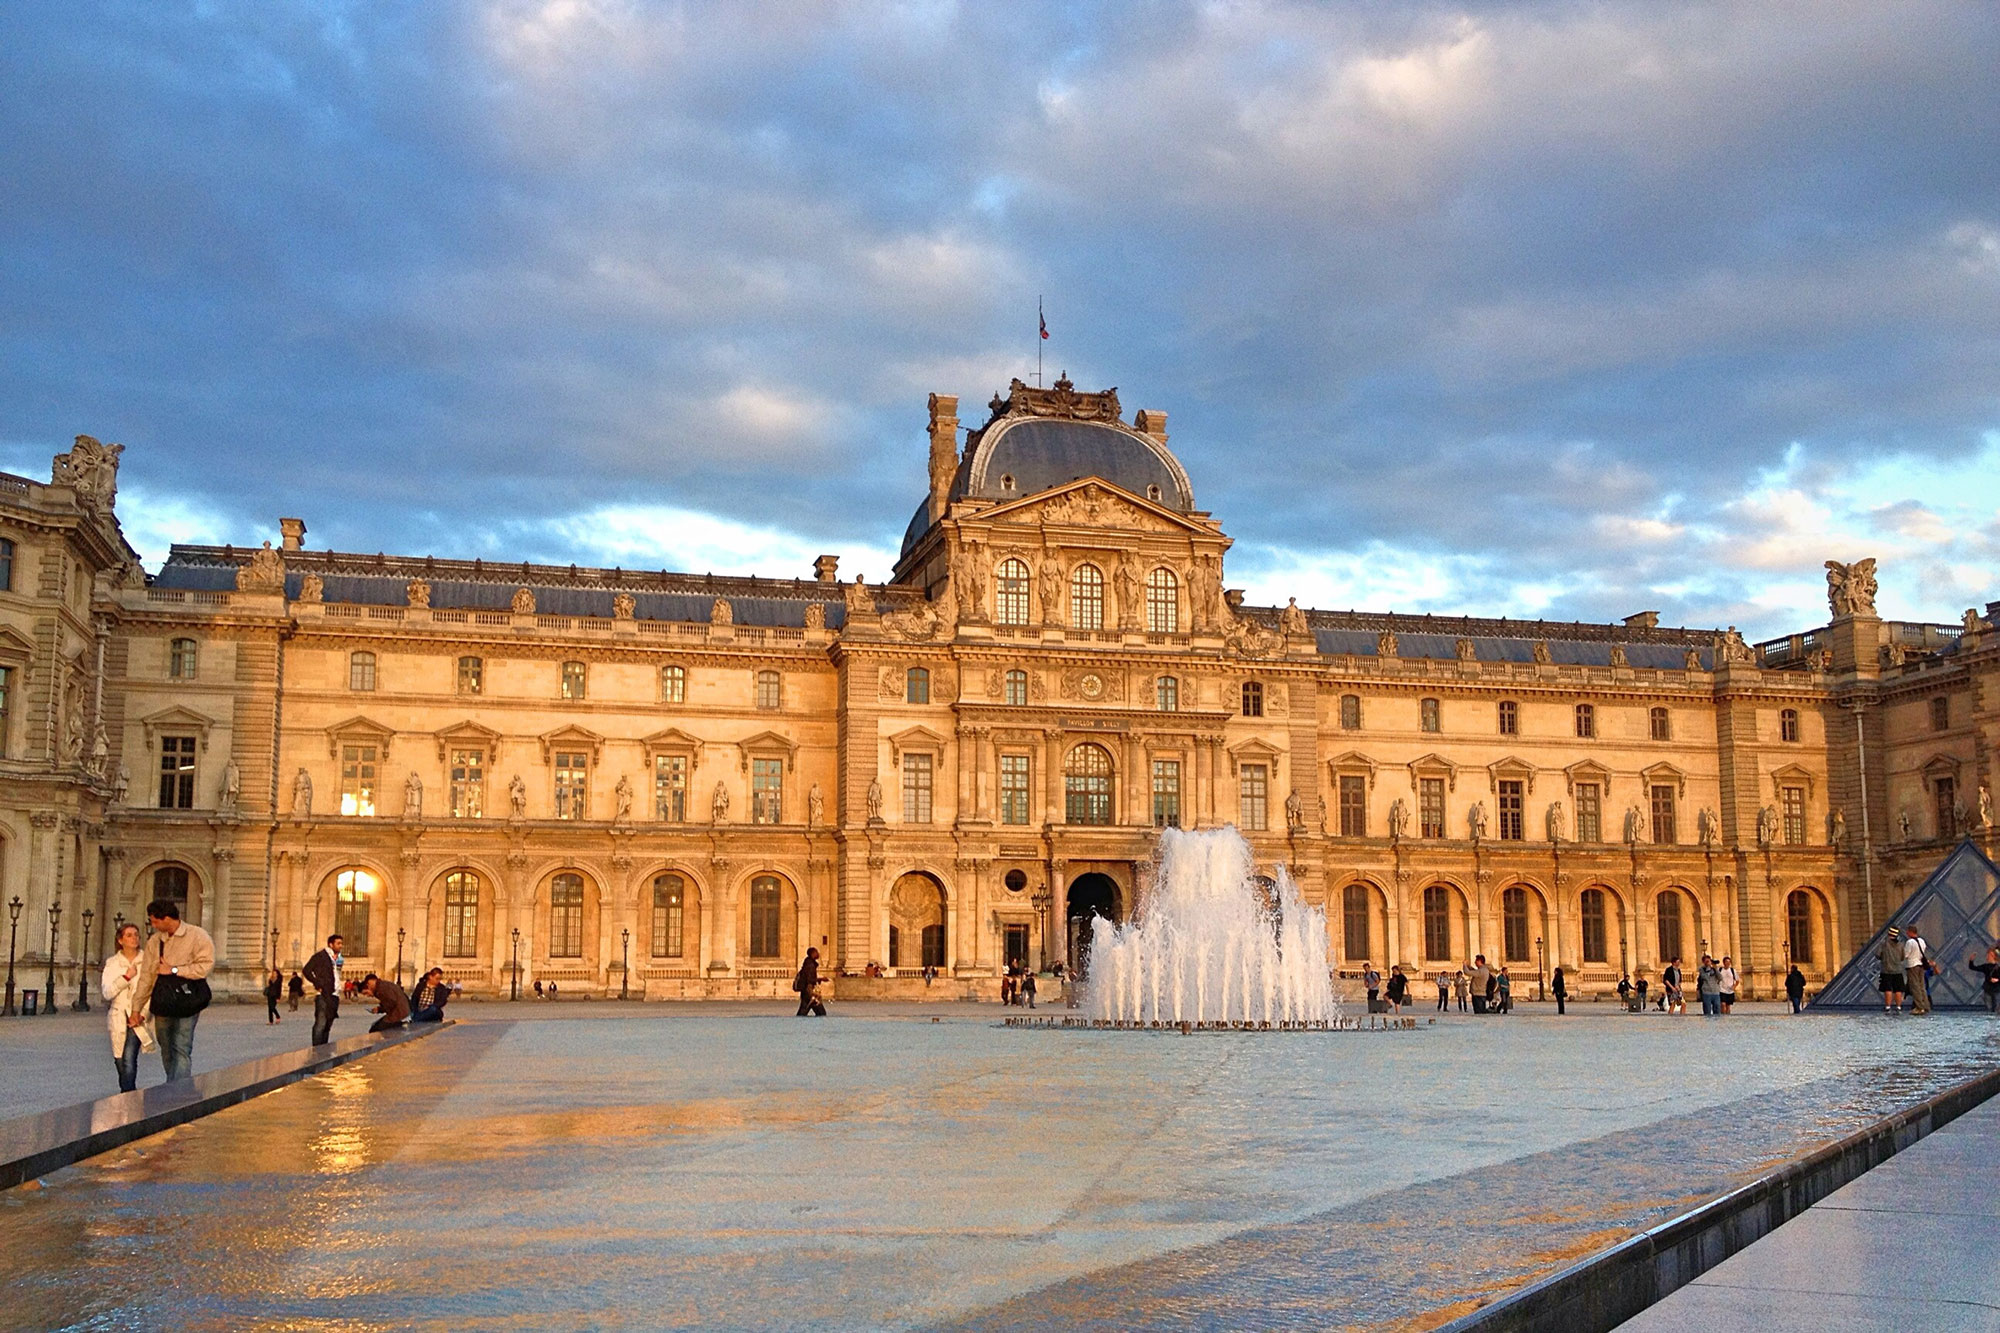 De louvre. Королевский дворец Лувр. Лувр музей. Луврский дворец в Париже. Музей Лувр в Париже здание.